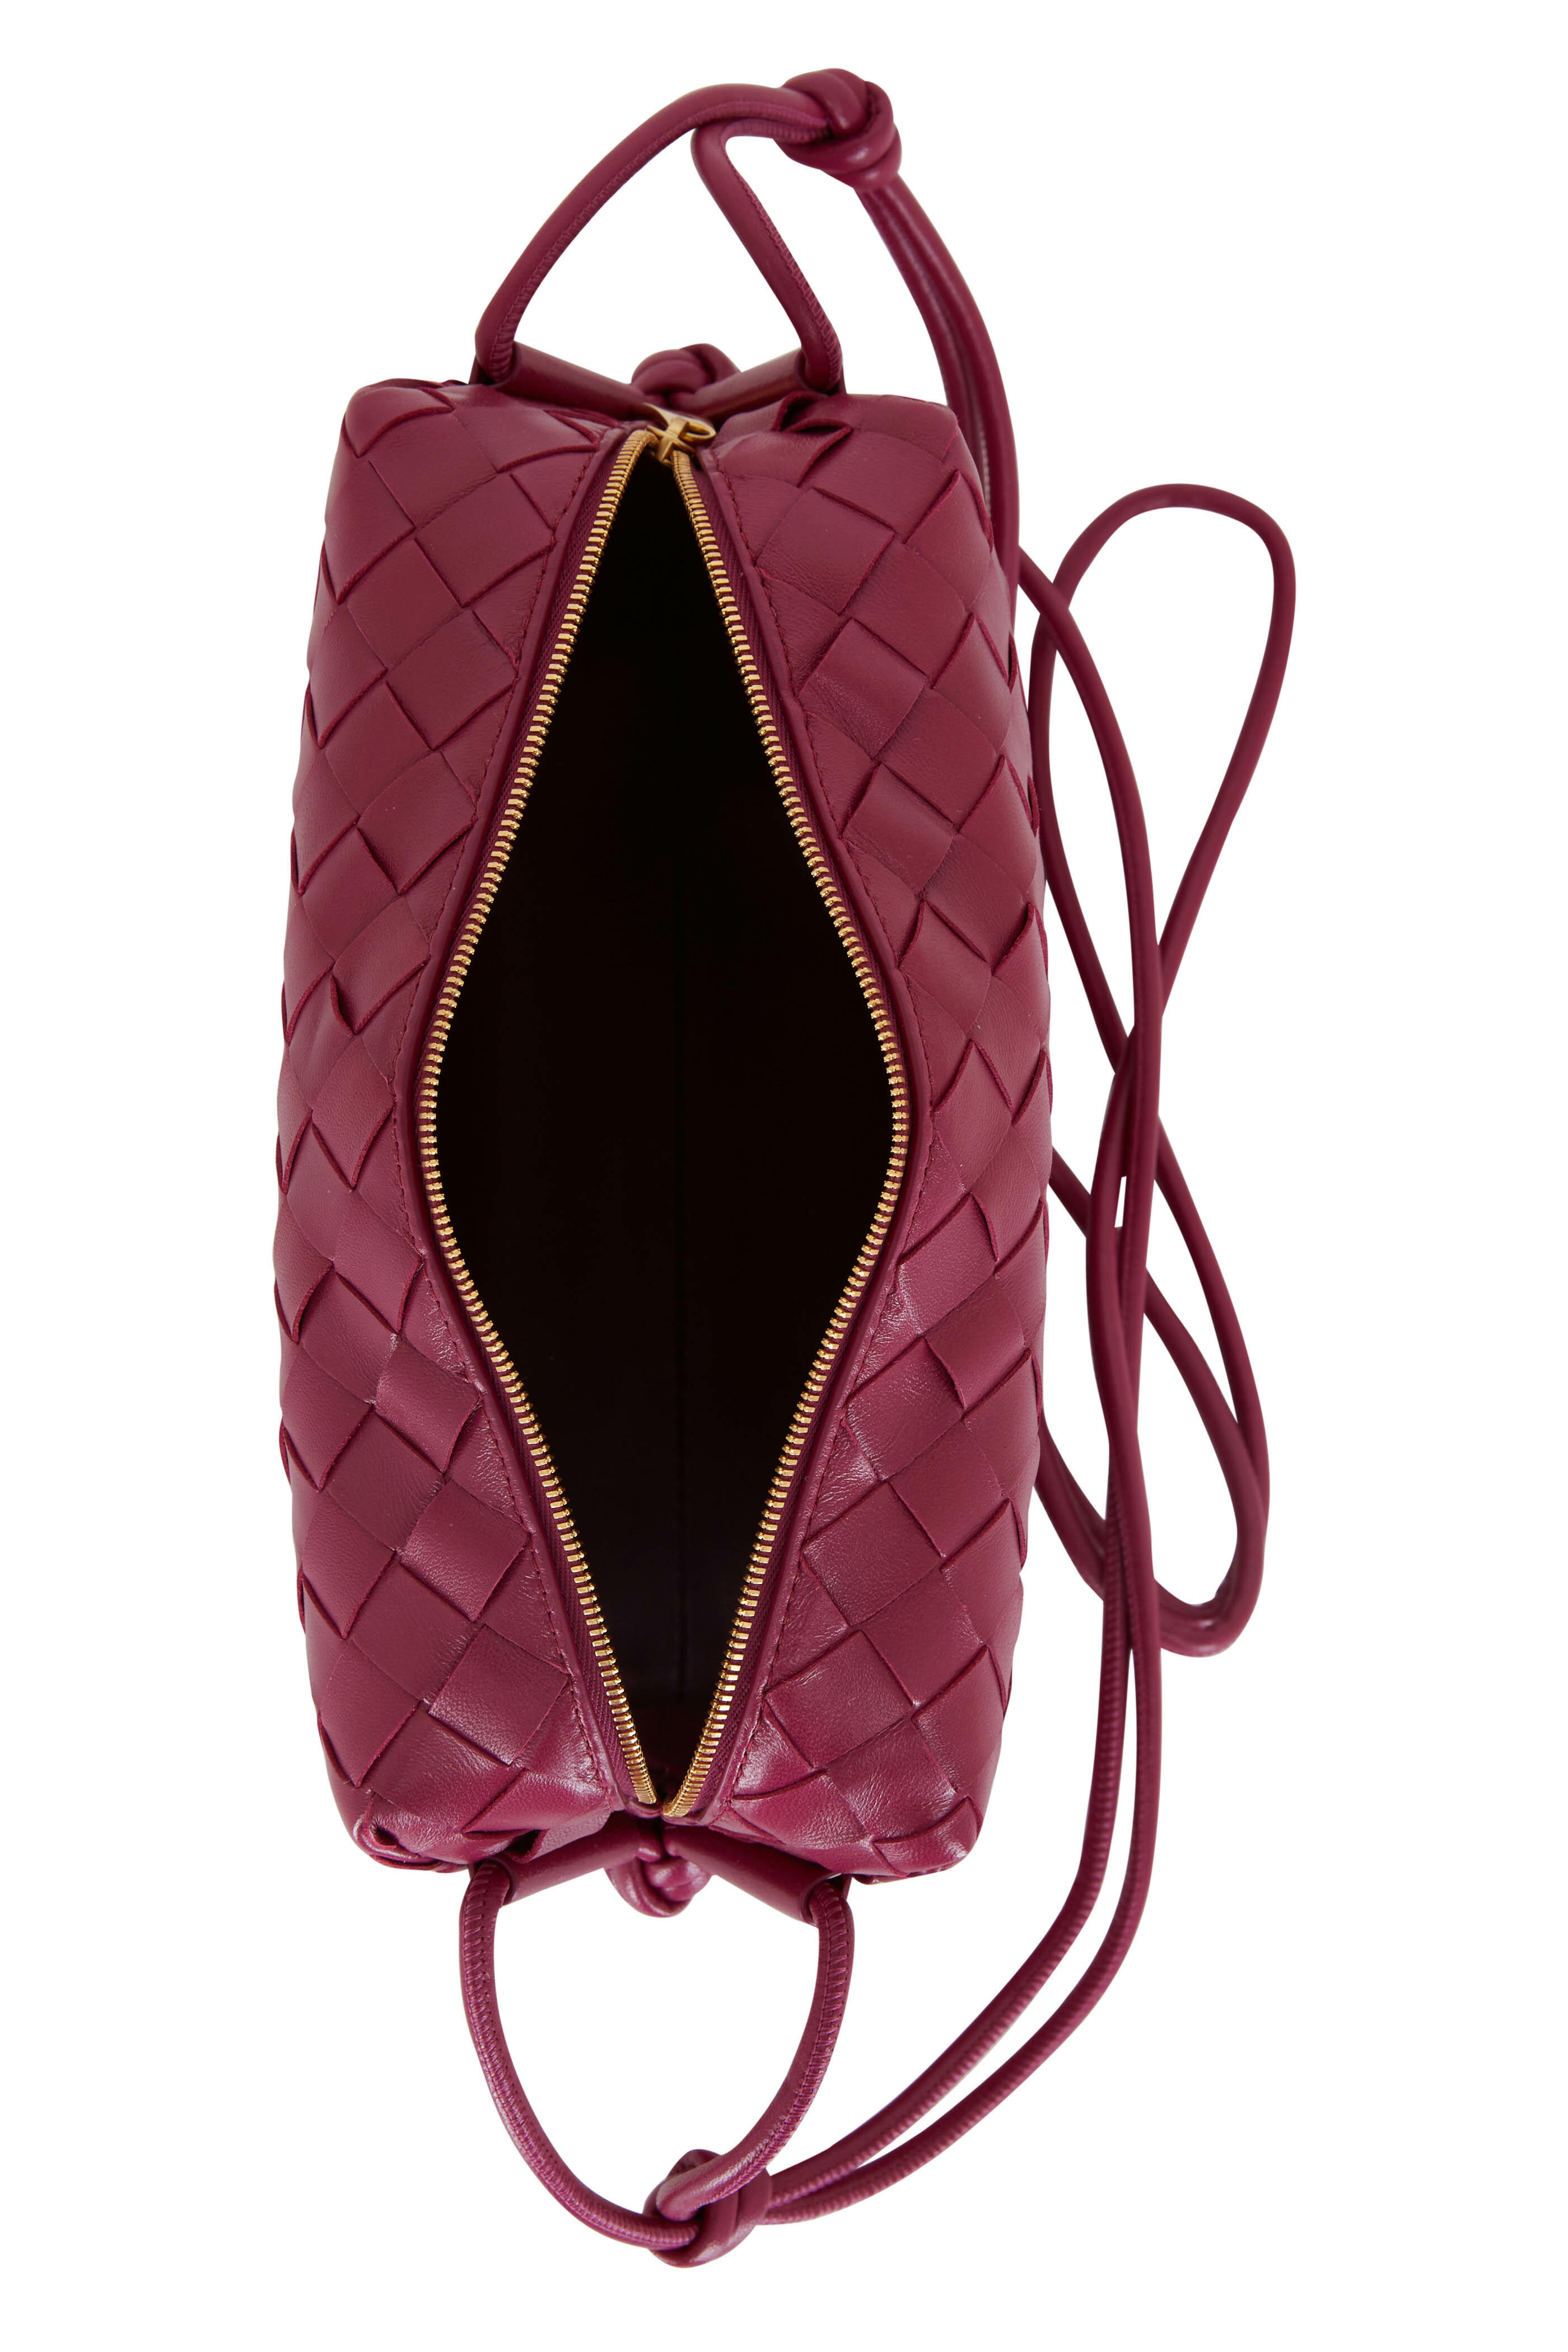 Bottega Veneta 'Nodini' shoulder bag, Women's Bags